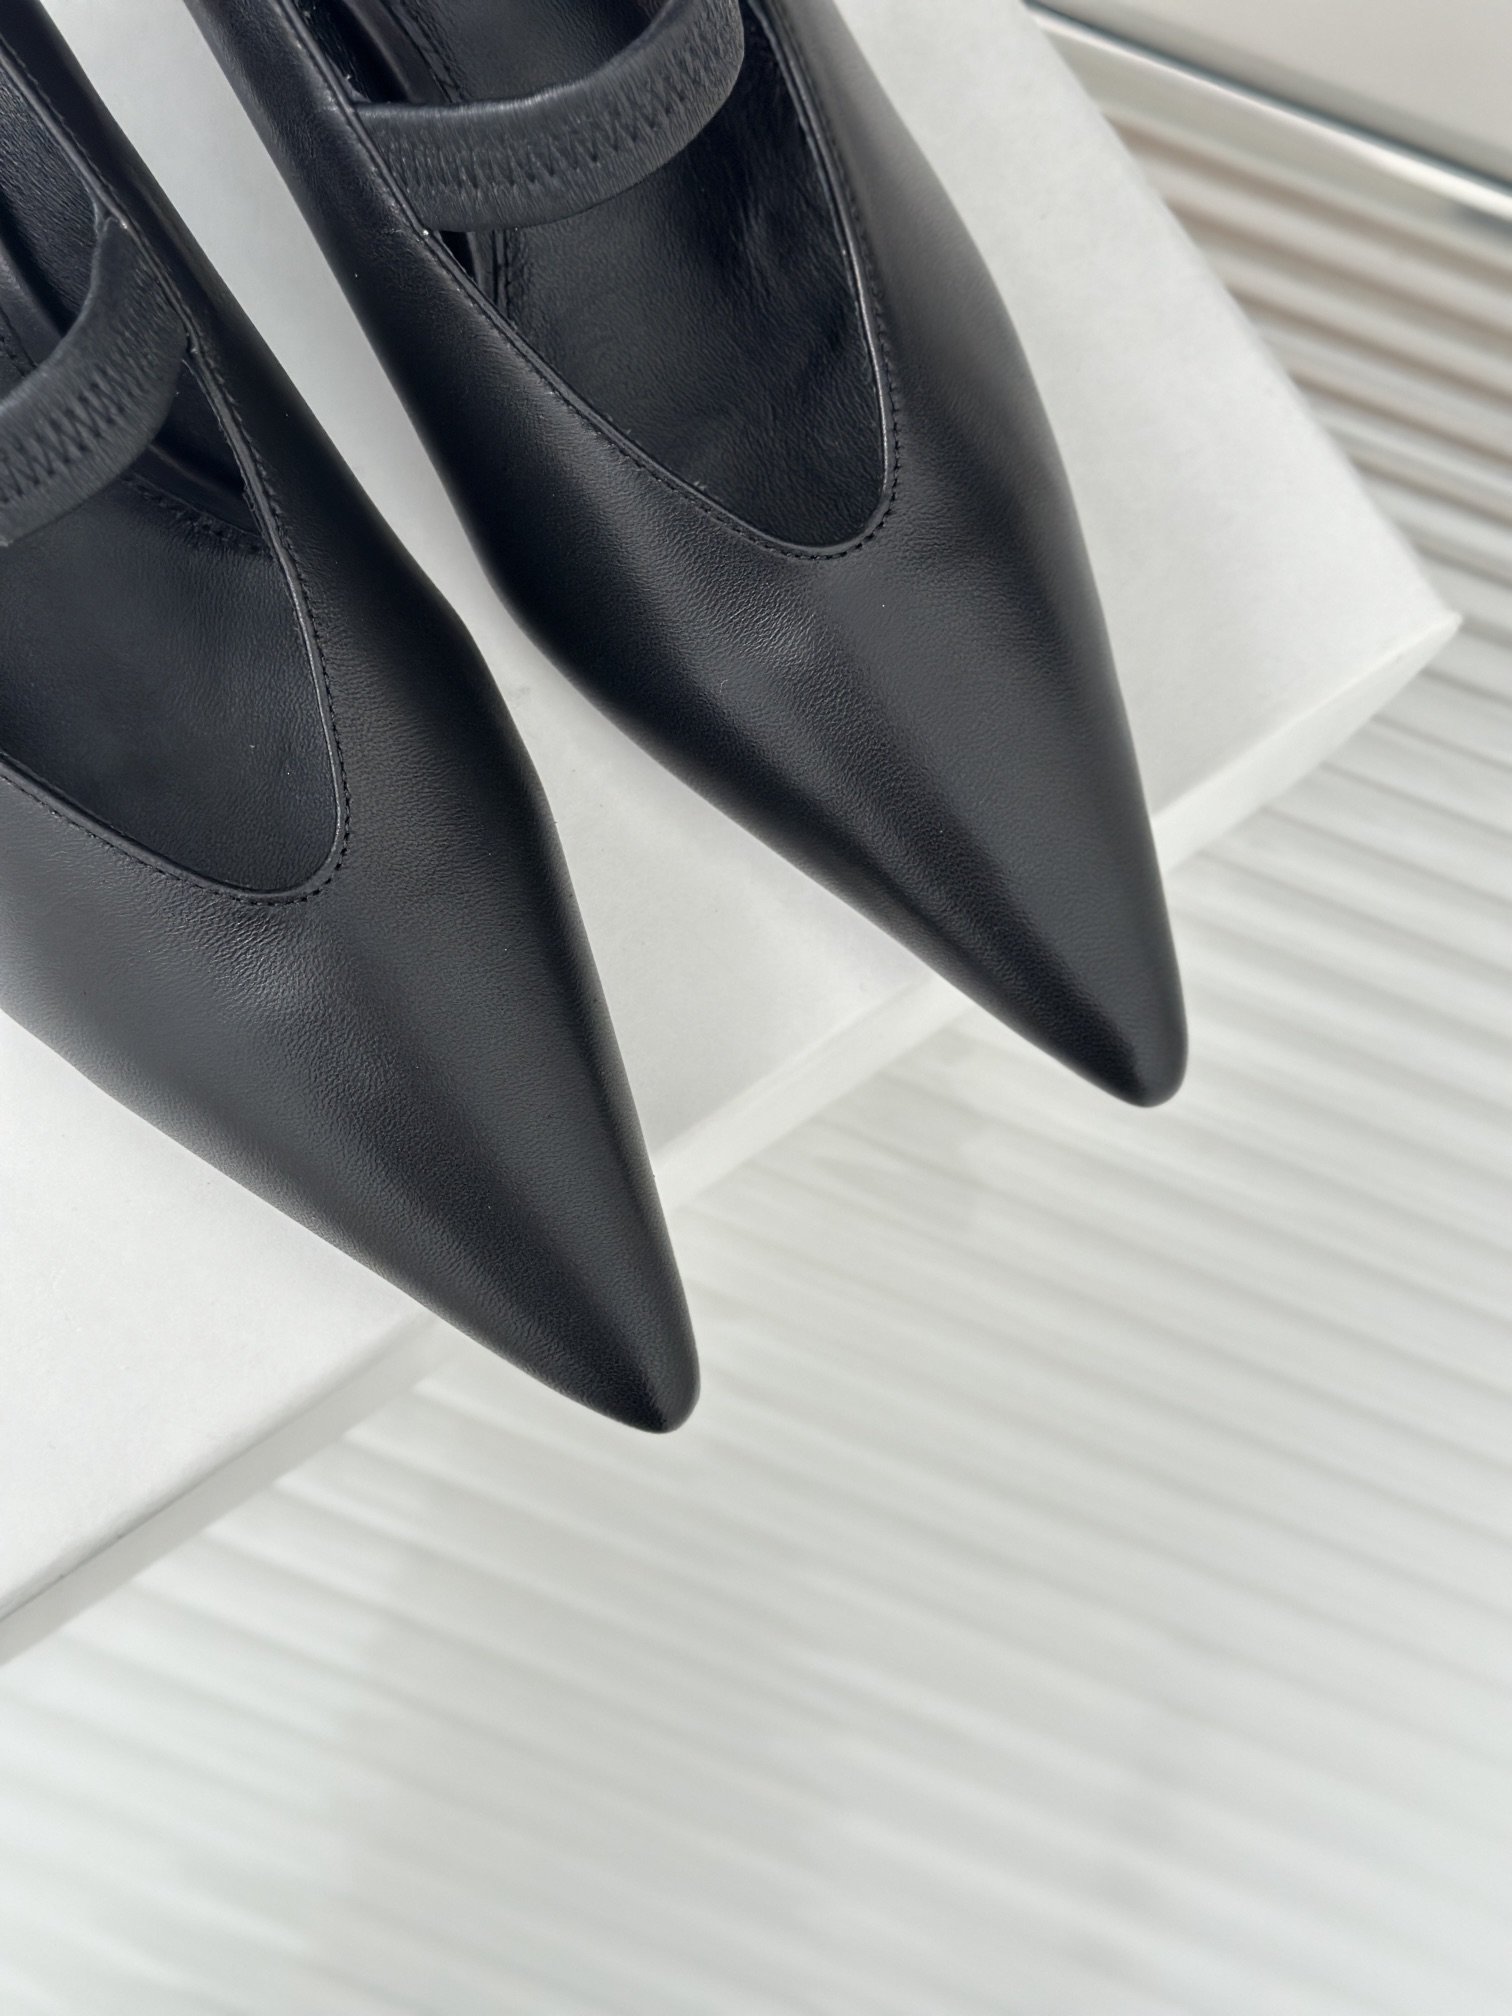 Toteme经典尖头字猫玛丽珍单鞋极简主义风格复古又高级！简约又大气属于非常耐看的款式！高级百搭之王一年